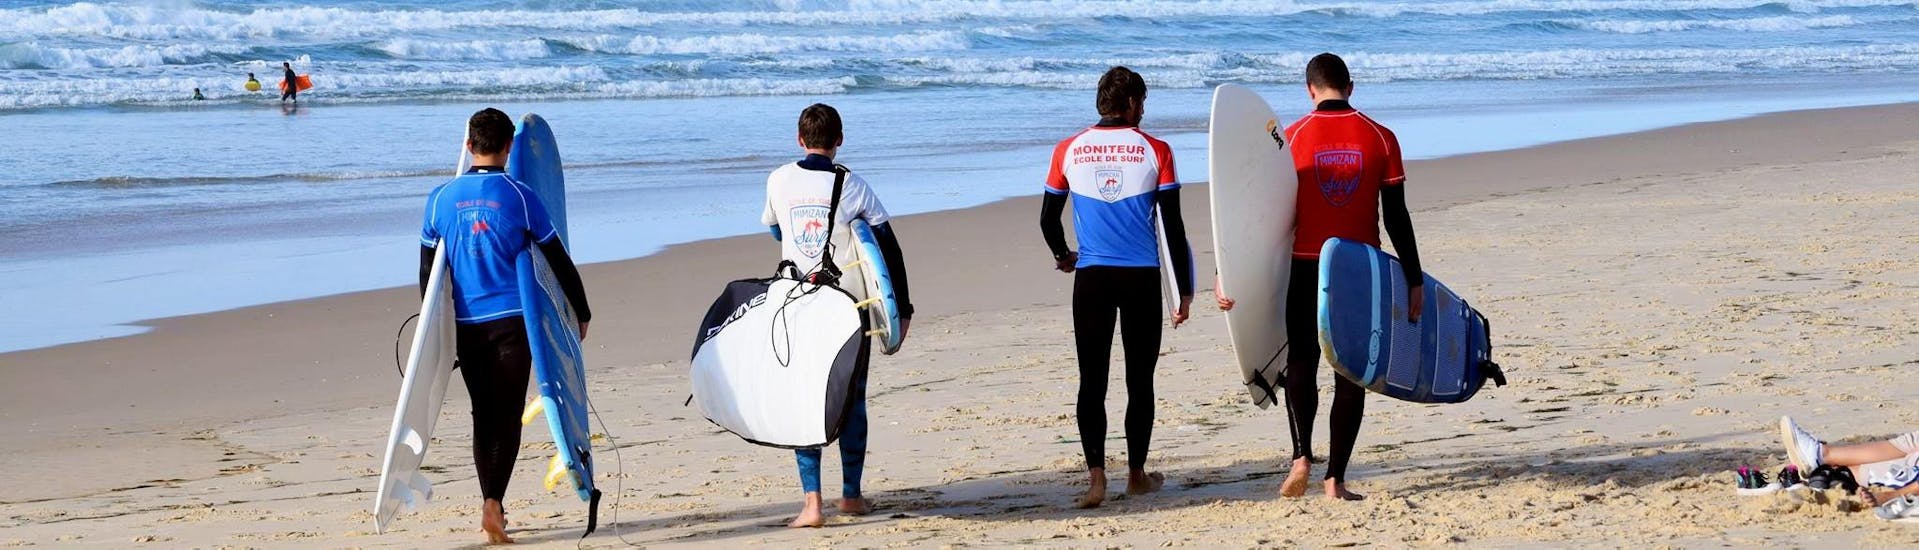 Curso de Surf en Mimizan a partir de 6 años para surfistas avanzados.